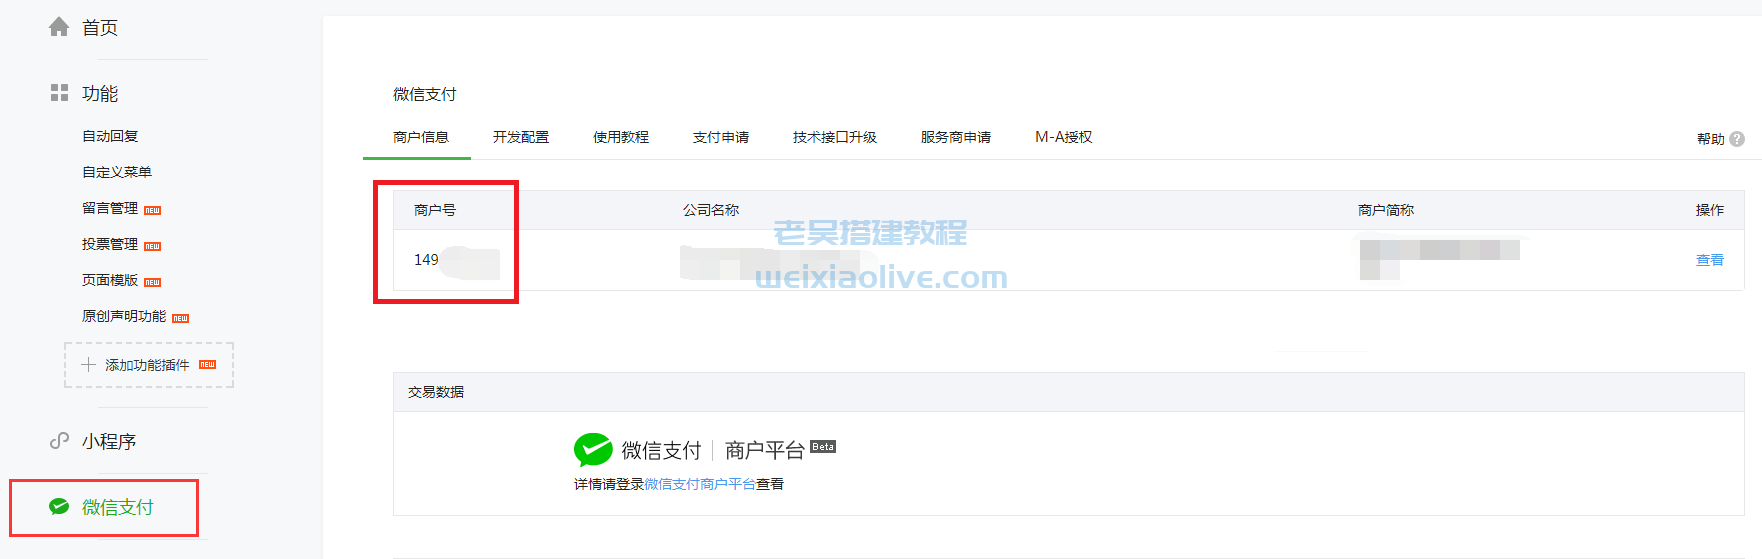 weixin支付接口申请及后台配置详细图文教程  第21张